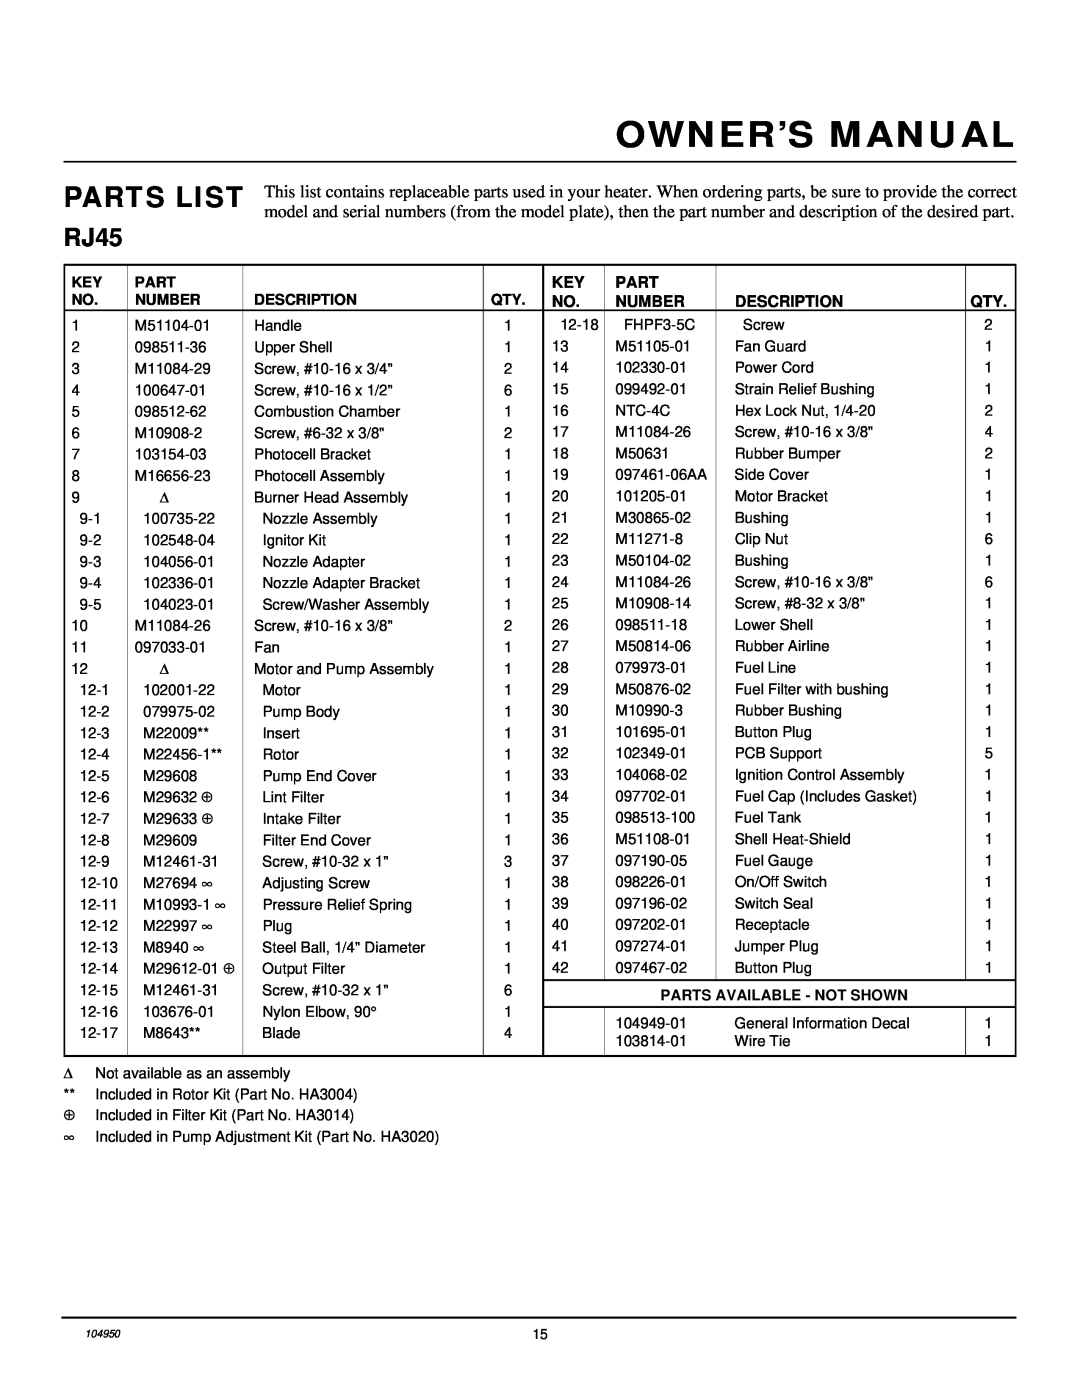 Desa RJ70 owner manual Parts List, RJ45, Number, Description, Parts Available - Not Shown 